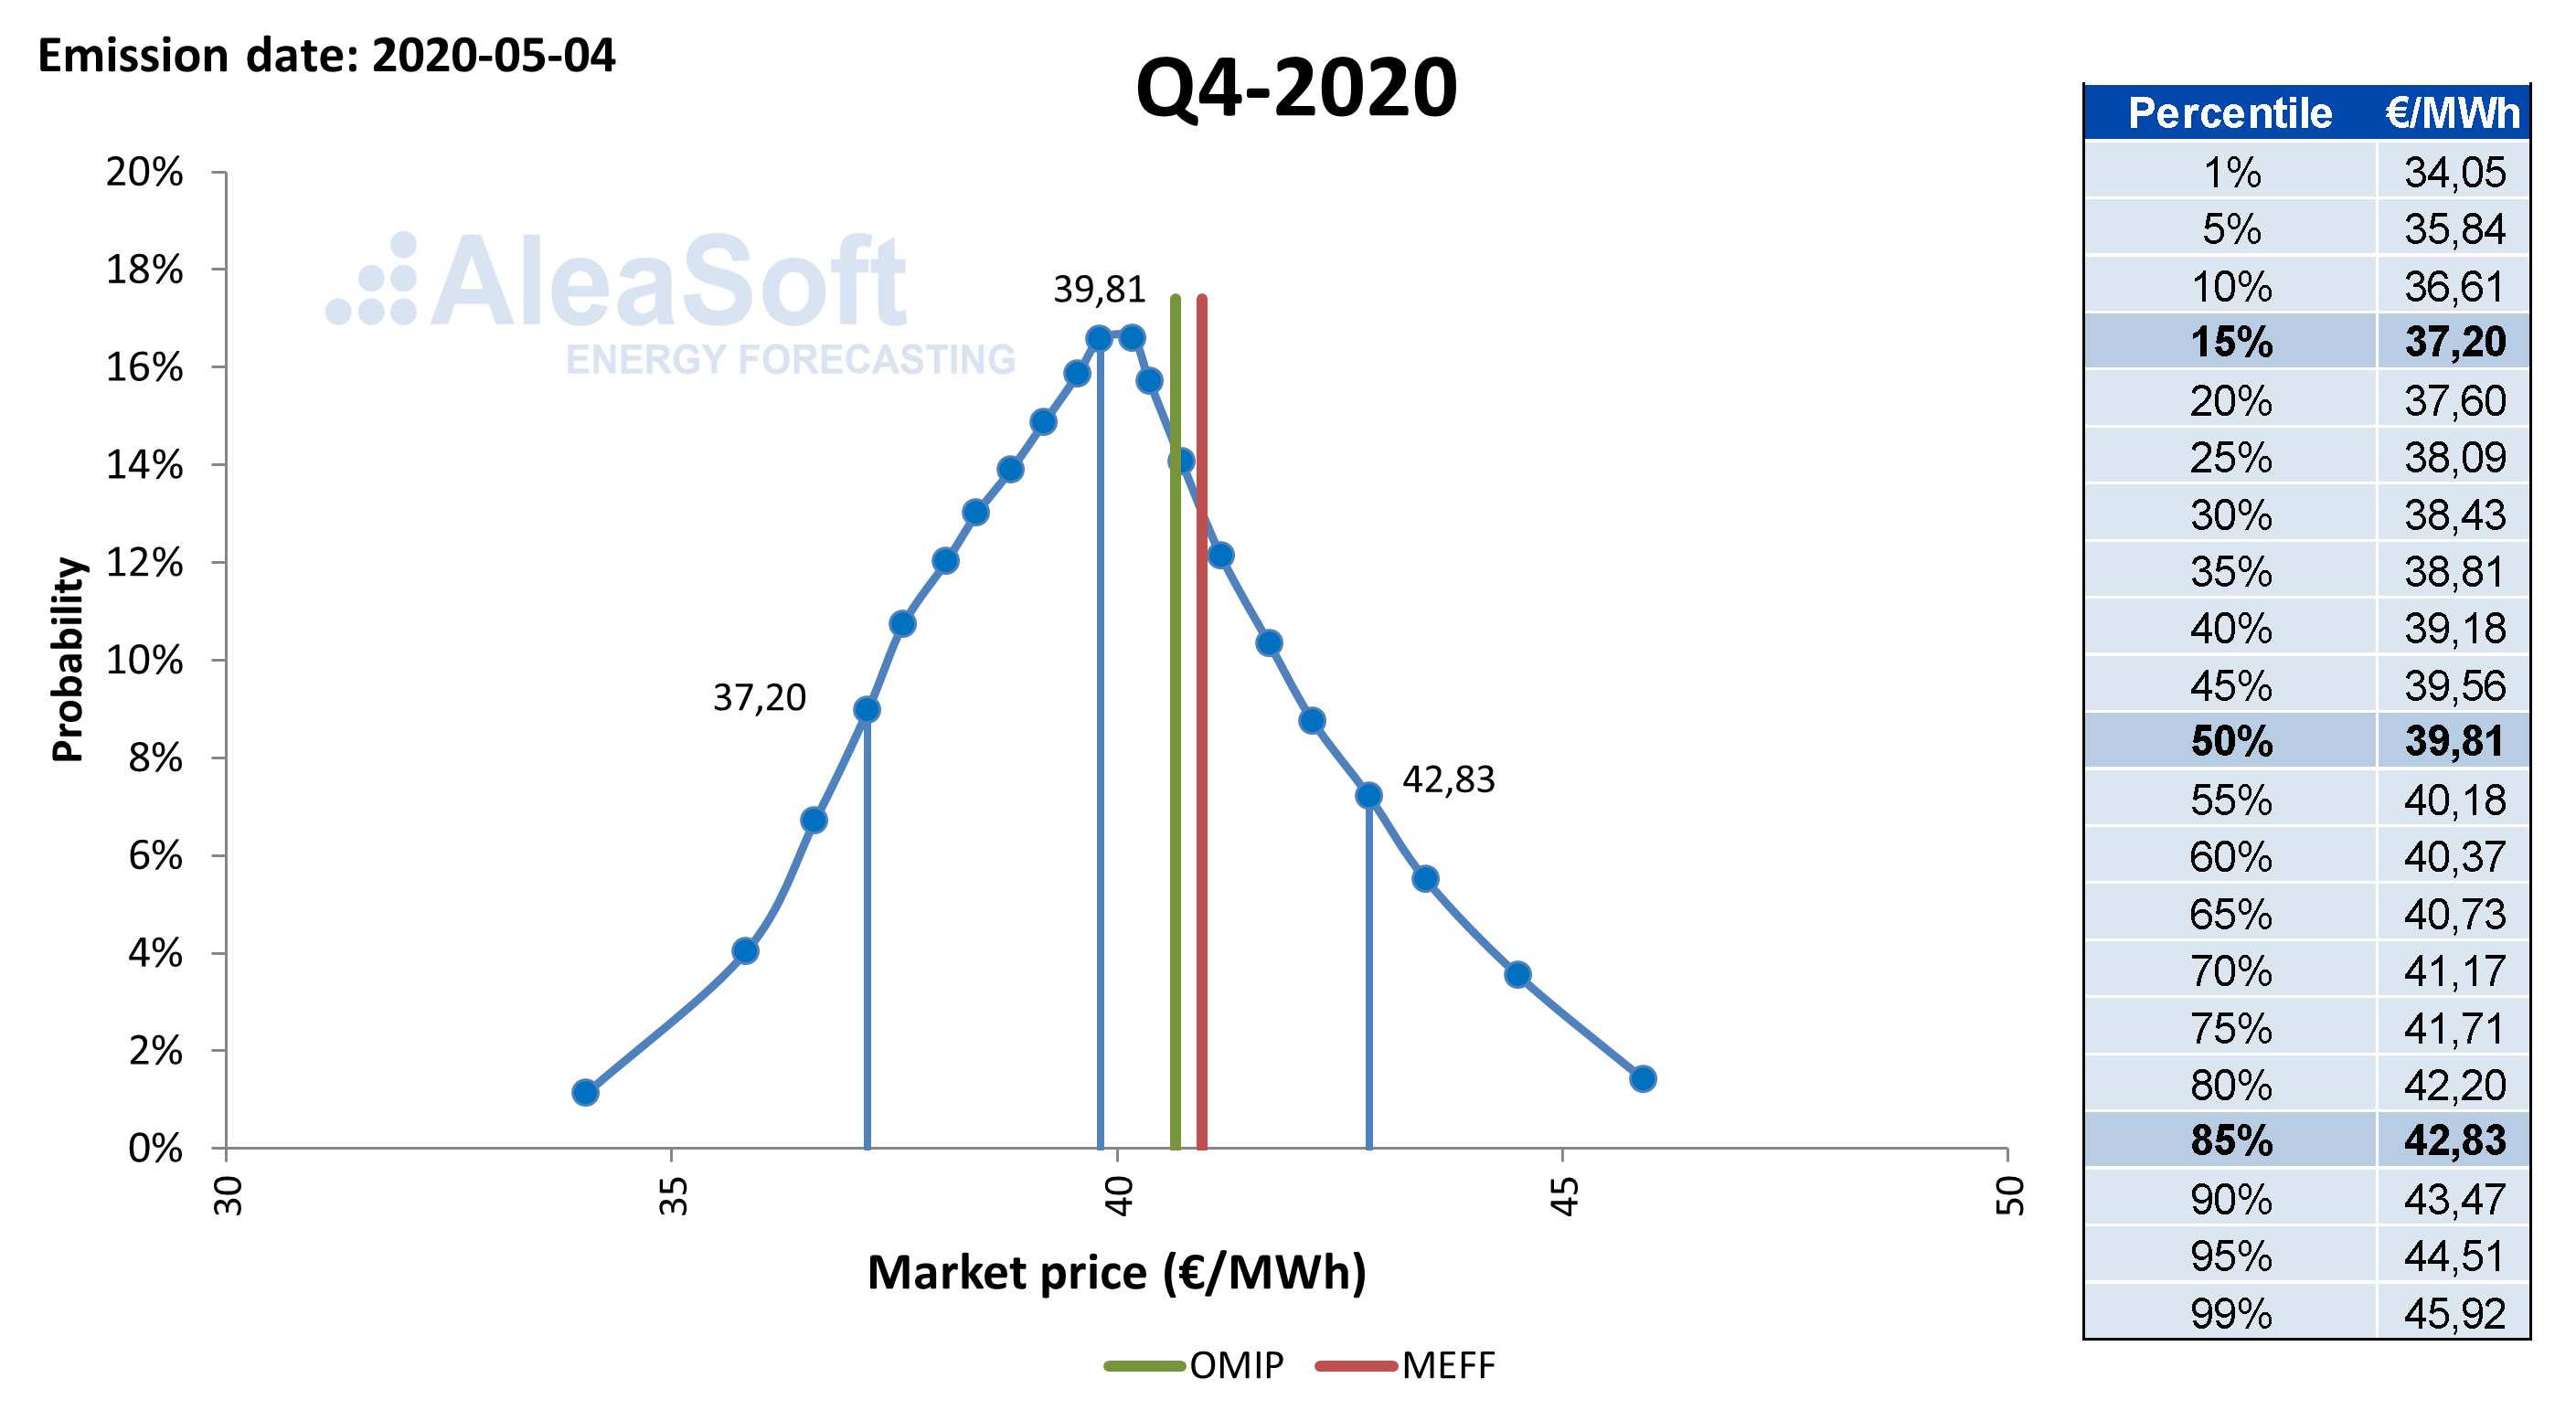 AleaSoft - Power market price probability distribution